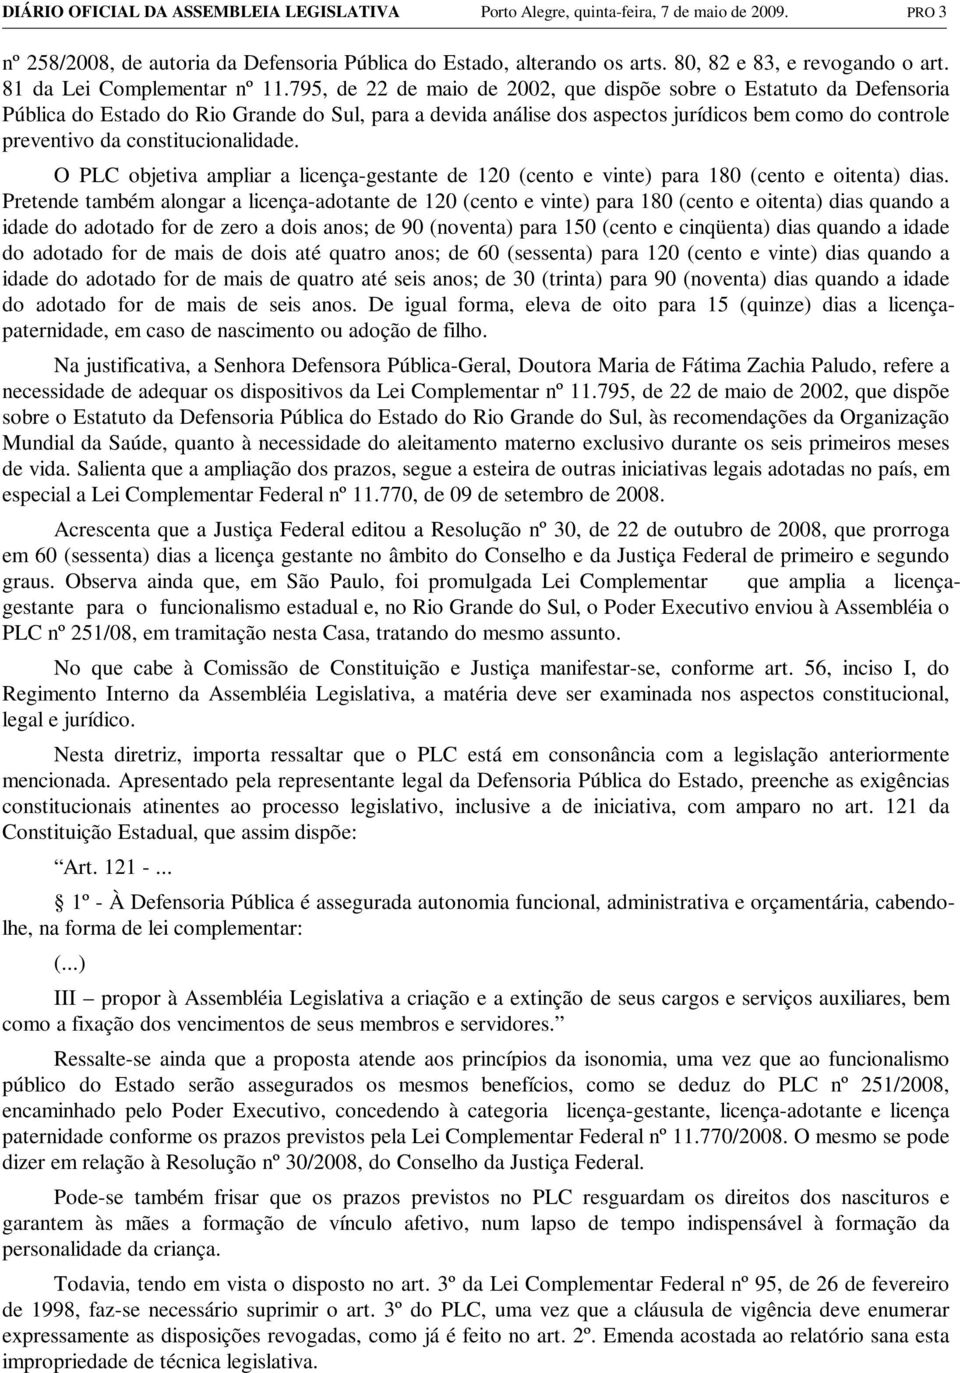 795, de 22 de maio de 2002, que dispõe sobre o Estatuto da Defensoria Pública do Estado do Rio Grande do Sul, para a devida análise dos aspectos jurídicos bem como do controle preventivo da